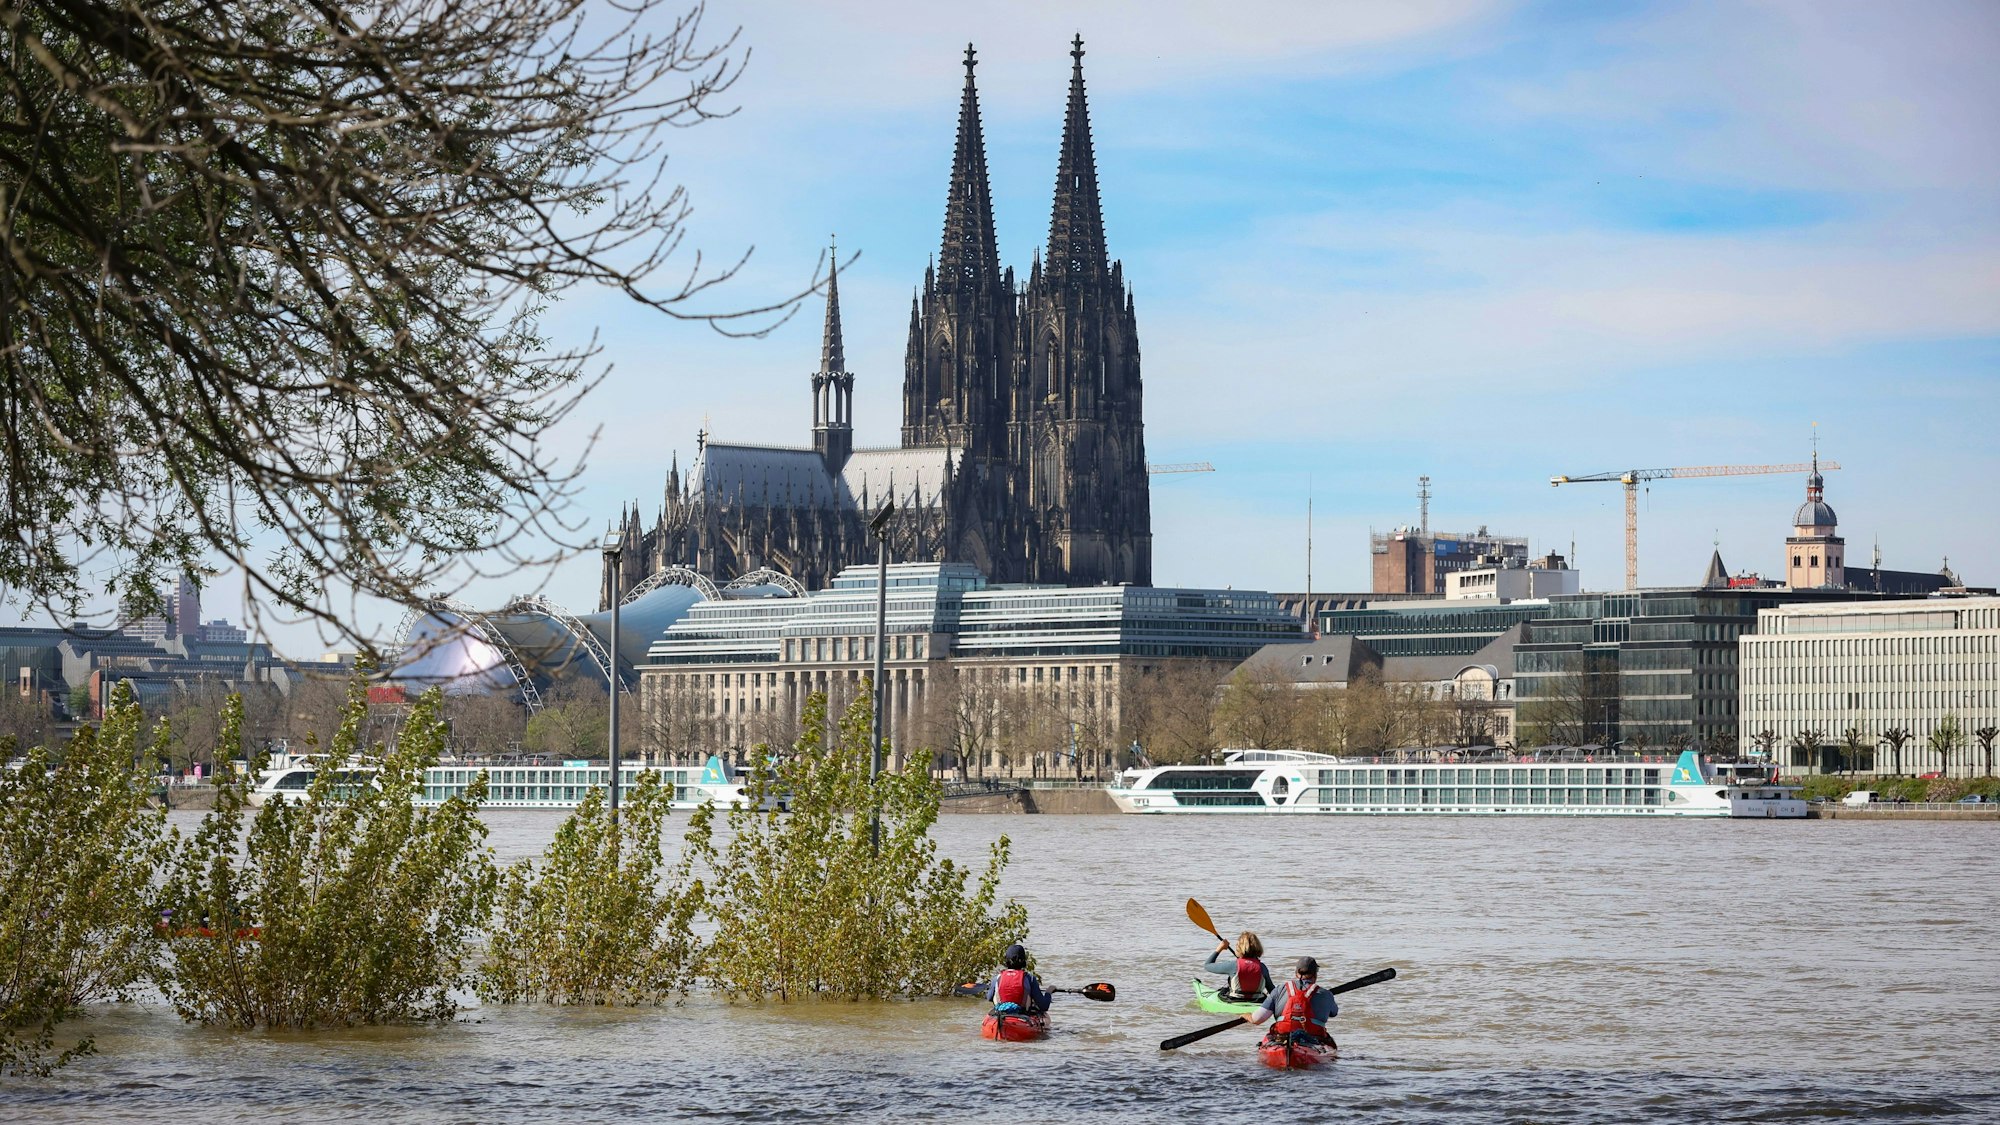 Sommer im April: In Köln waren am Samstag (6.4.) viele Menschen draußen, so wie diese Kajak-Fahrer vor dem Dom-Panorama.




